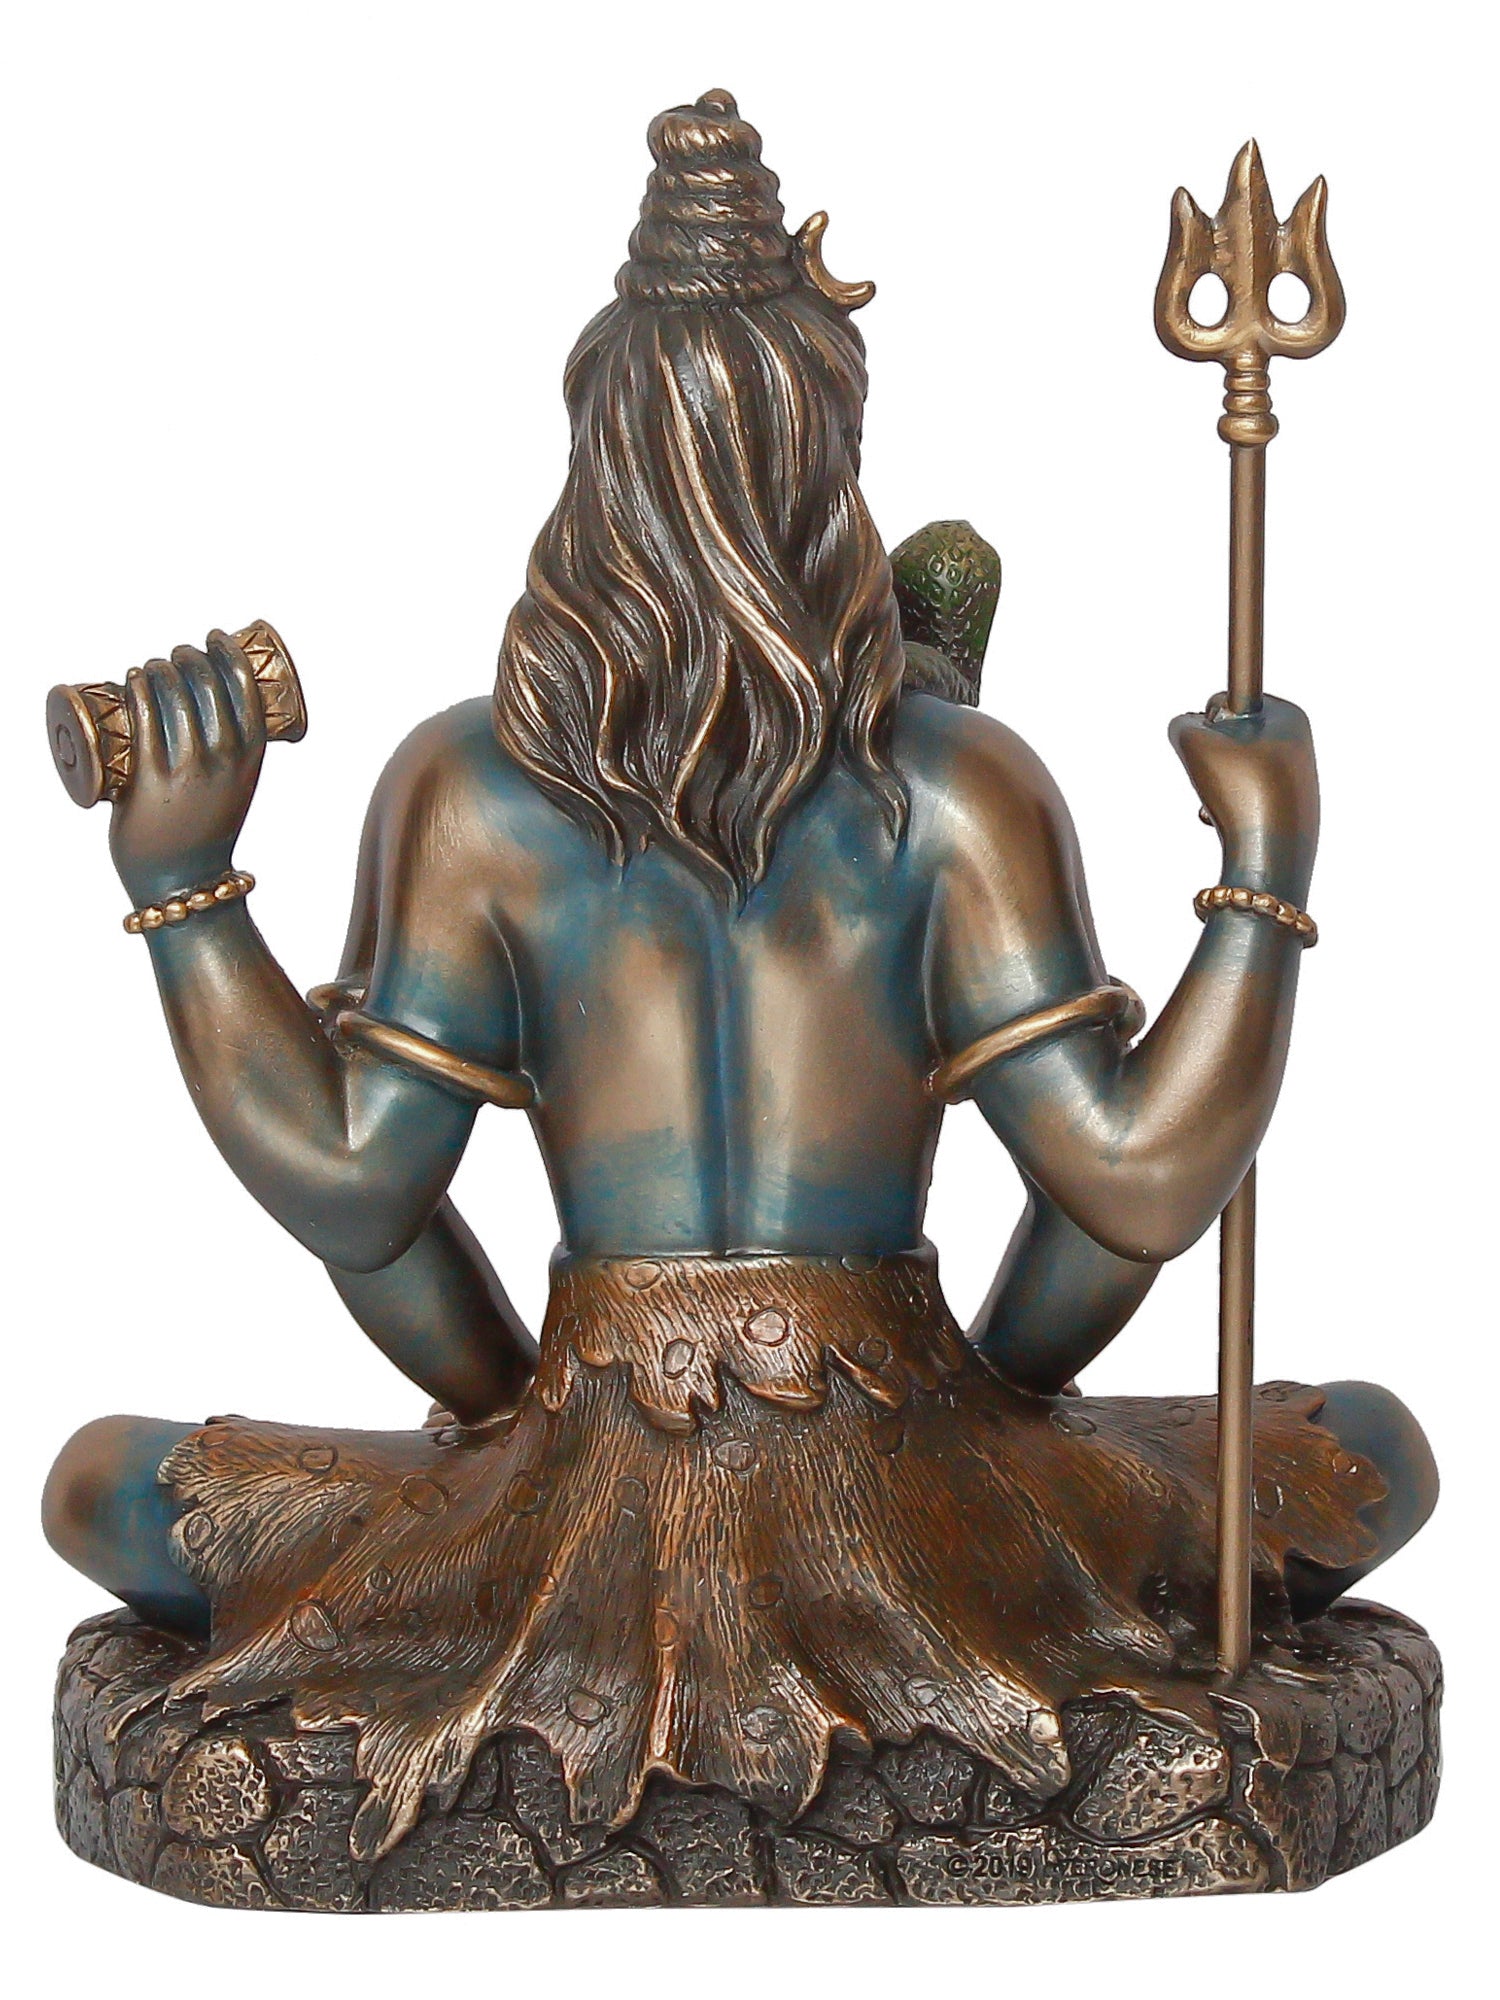 Lord Shiva Blessing Posture(Ashirwad Mudra) – Rudraushtika